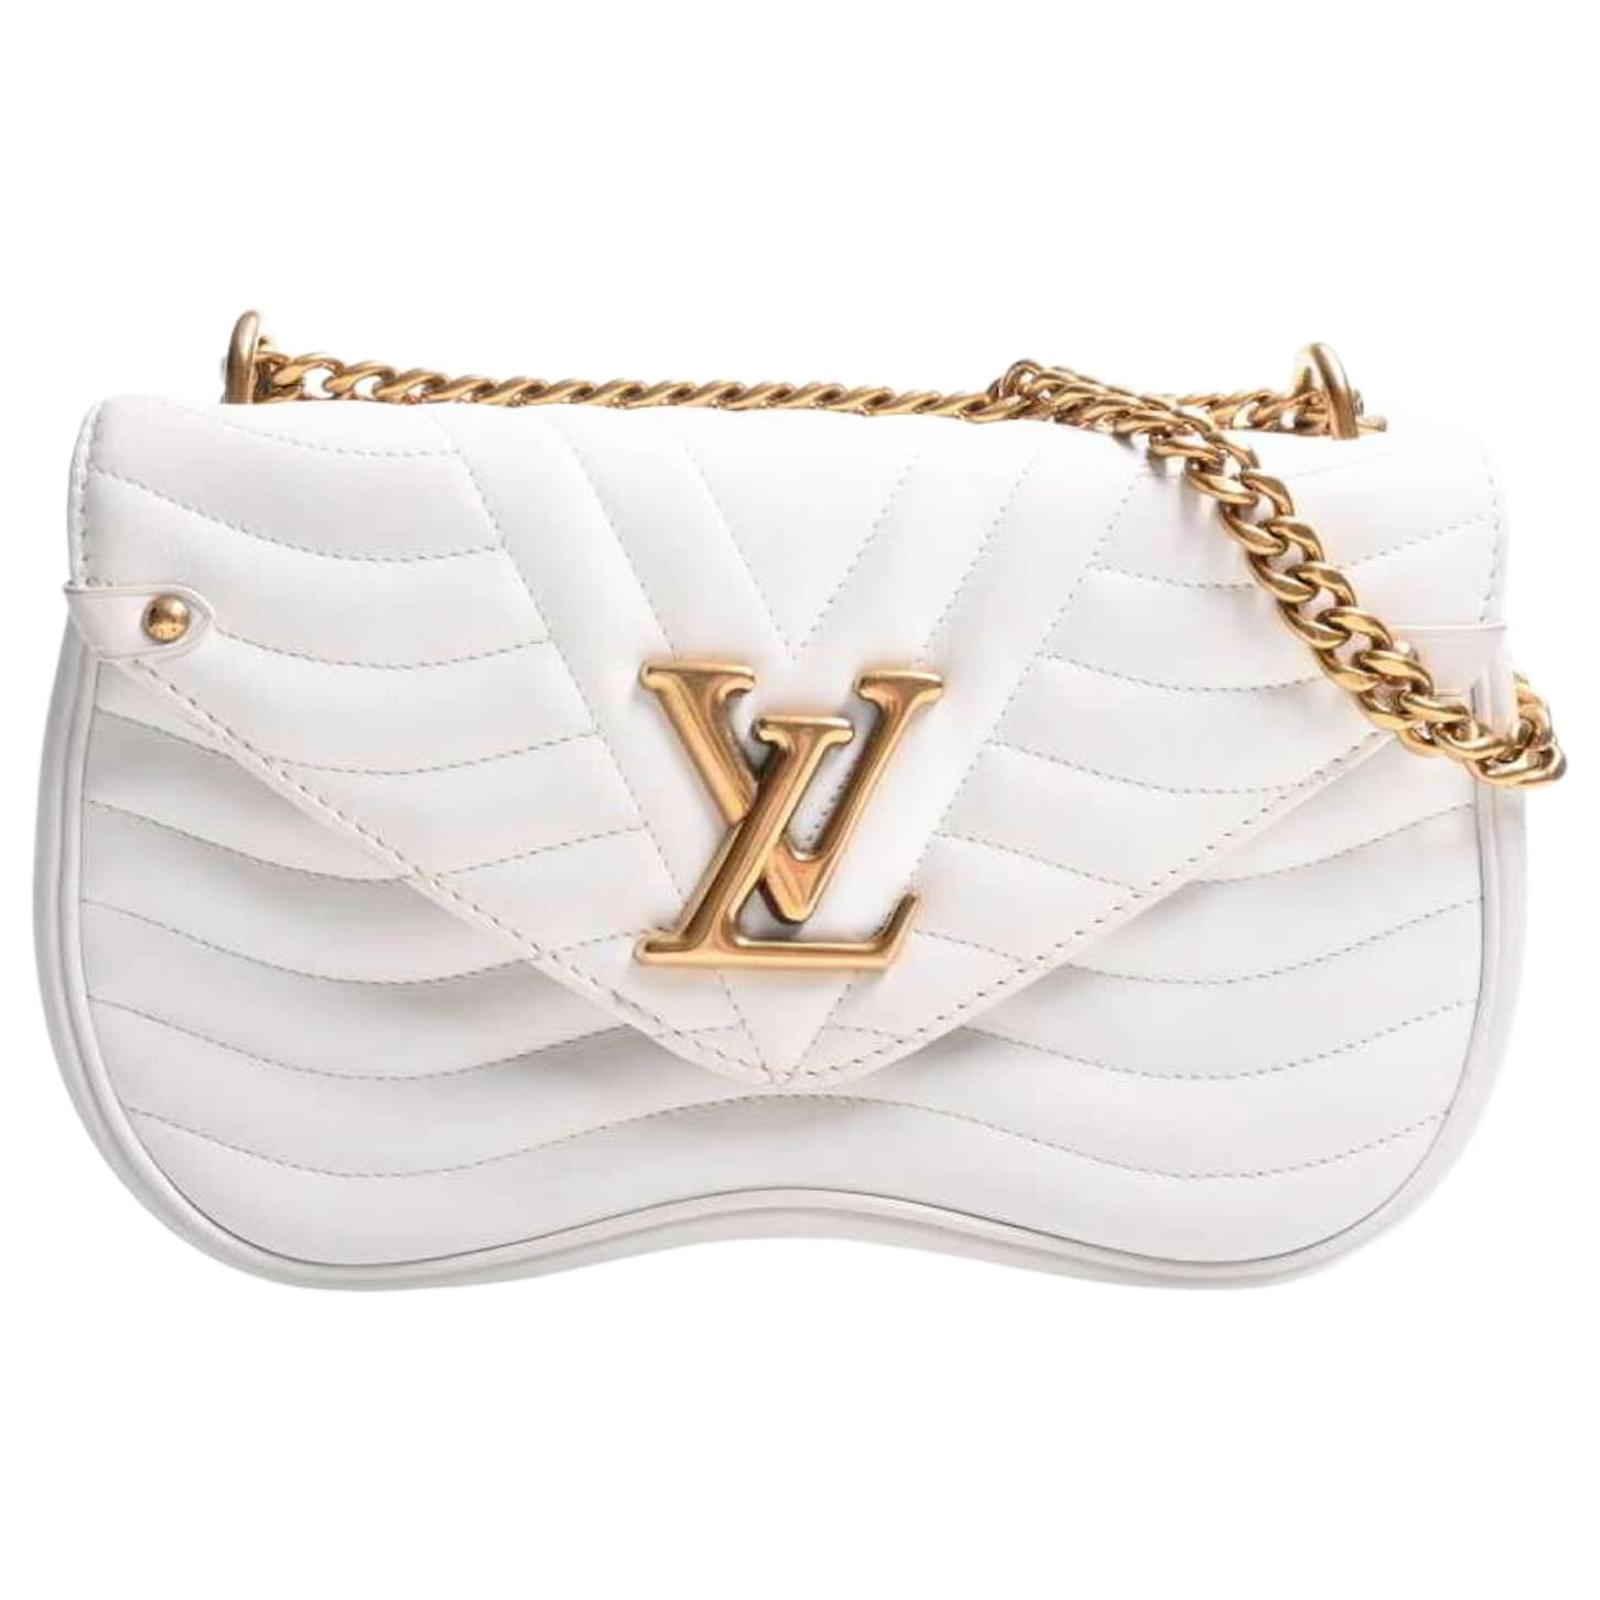 Louis Vuitton New Wave Leather Shoulder Bag